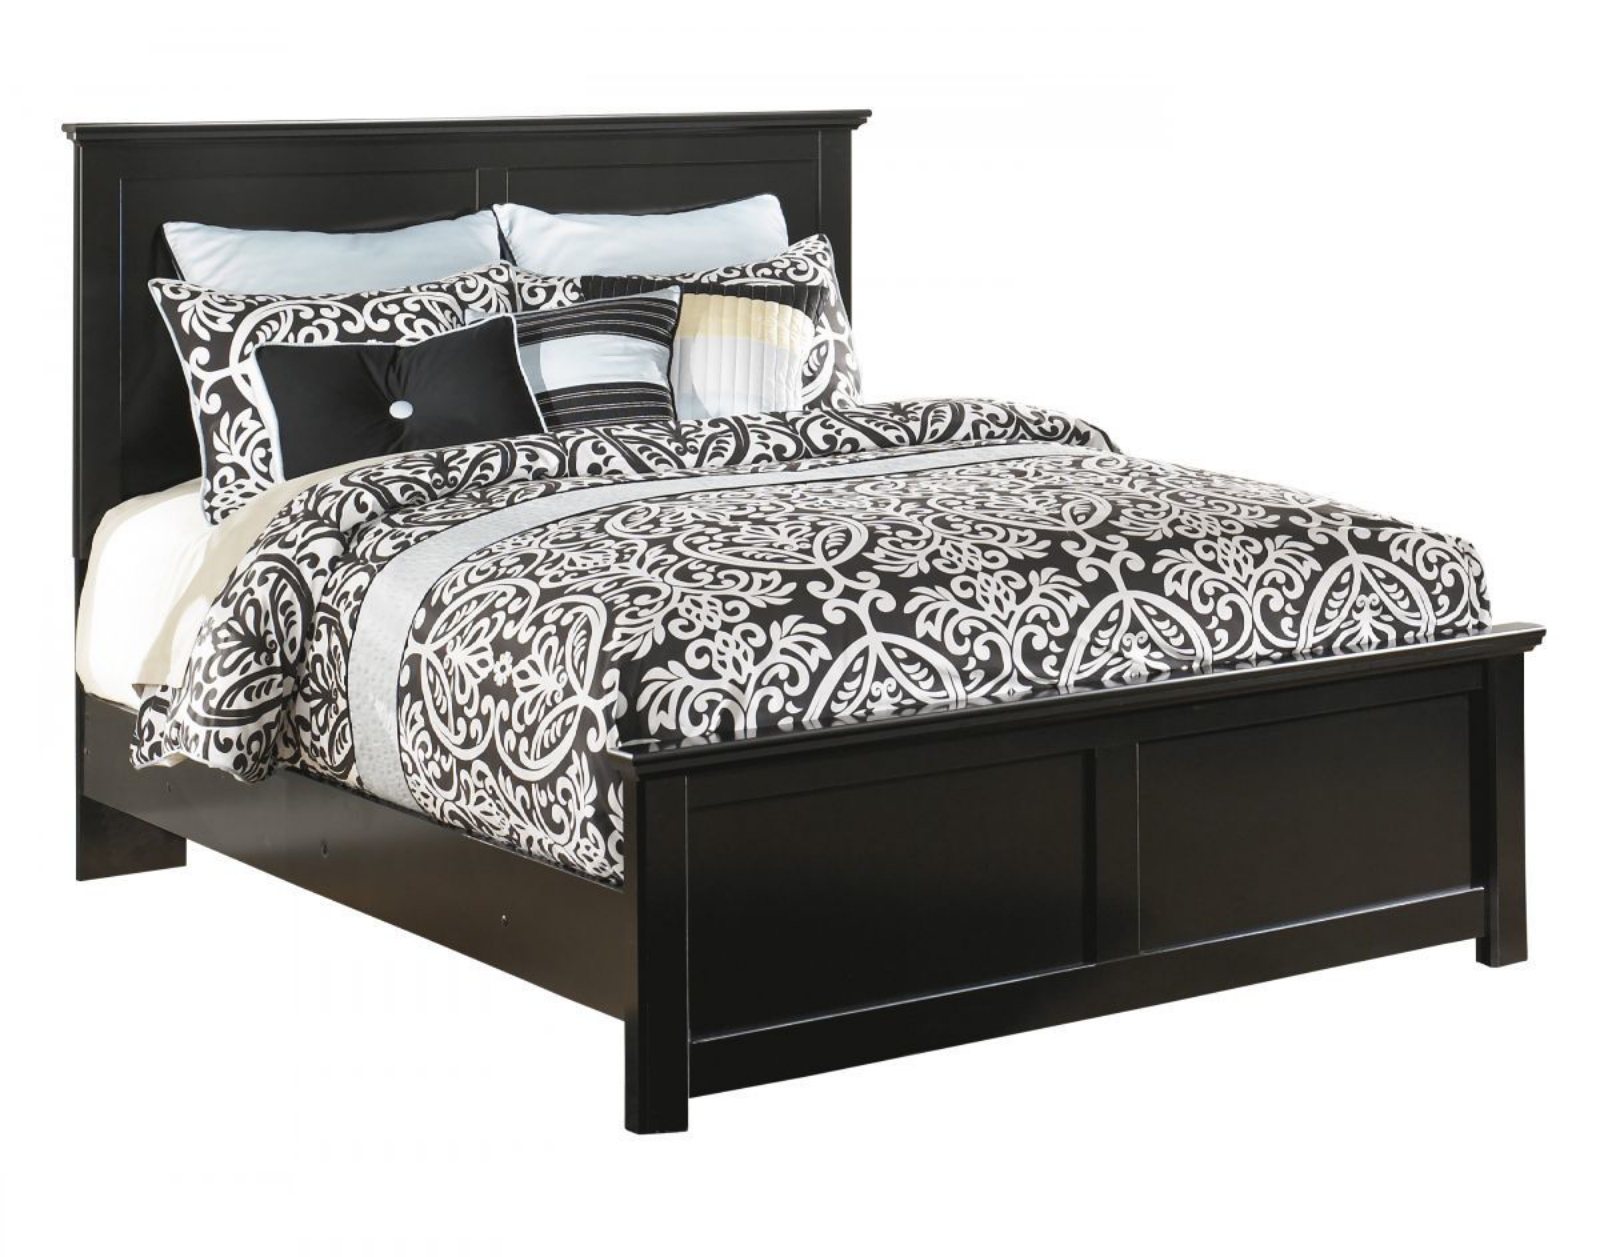 Picture of Maribel Queen Size Bed